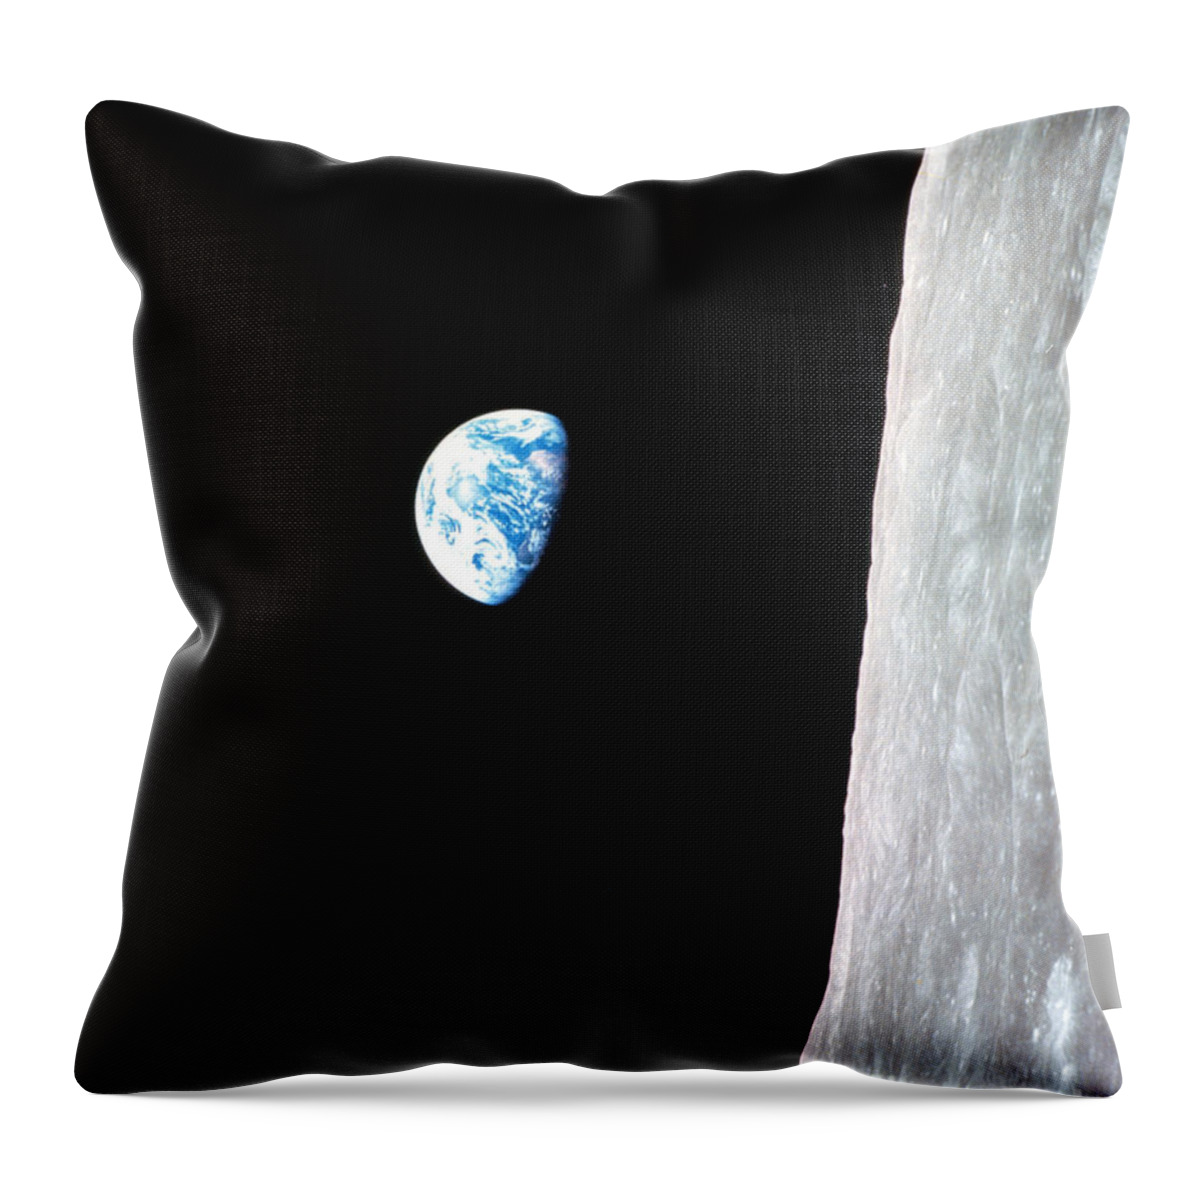 Nasa Throw Pillow featuring the photograph Earthrise From Apollo 8 by Nasa